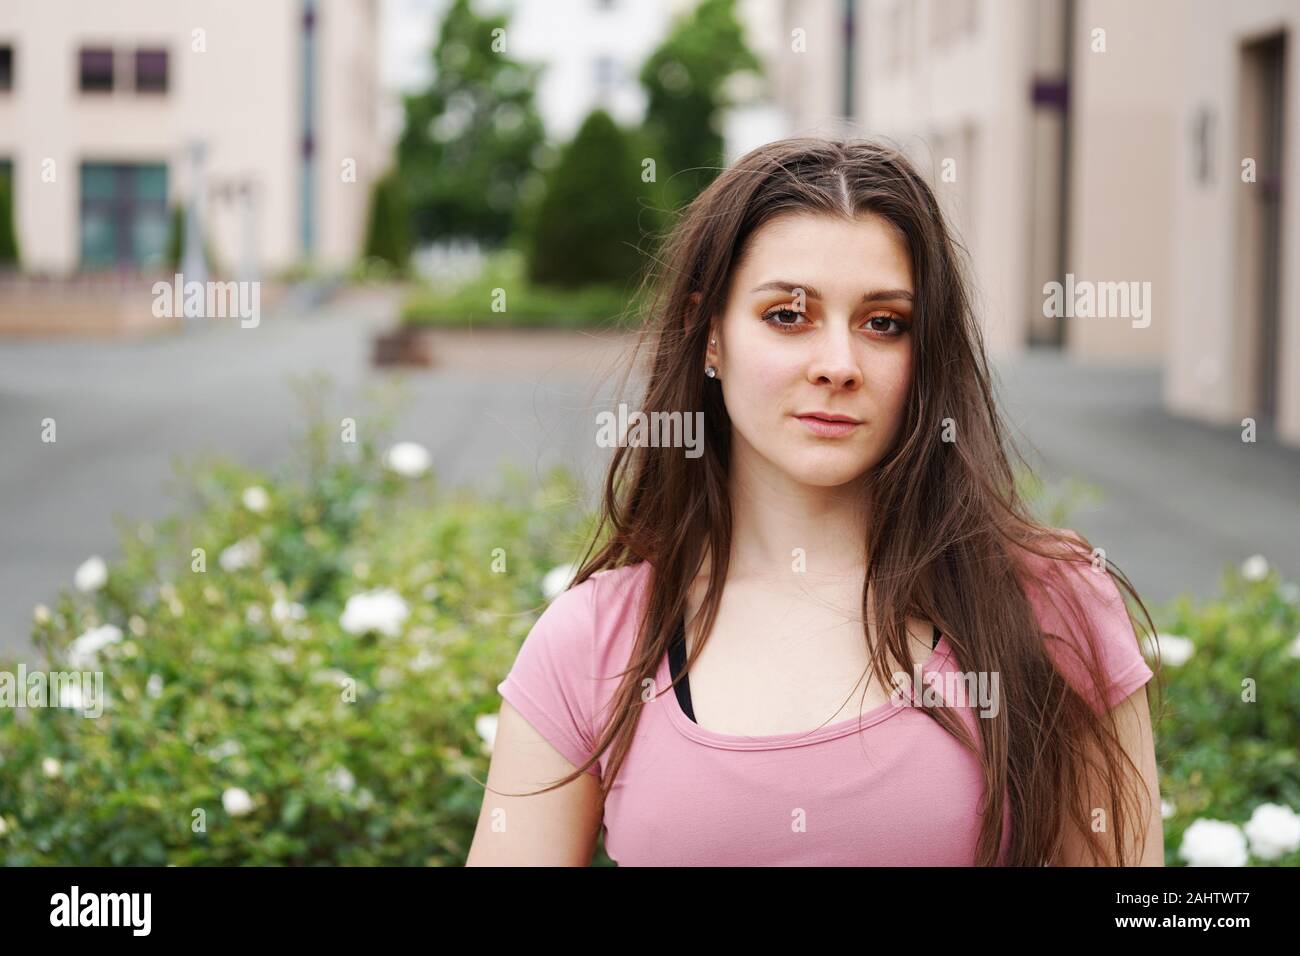 Straße Porträt einer ernsthaften jungen Frau mit langen brünetten Haar outdoor. Schöne junge Frau in einem urbanen Umfeld mit Platz kopieren Stockfoto